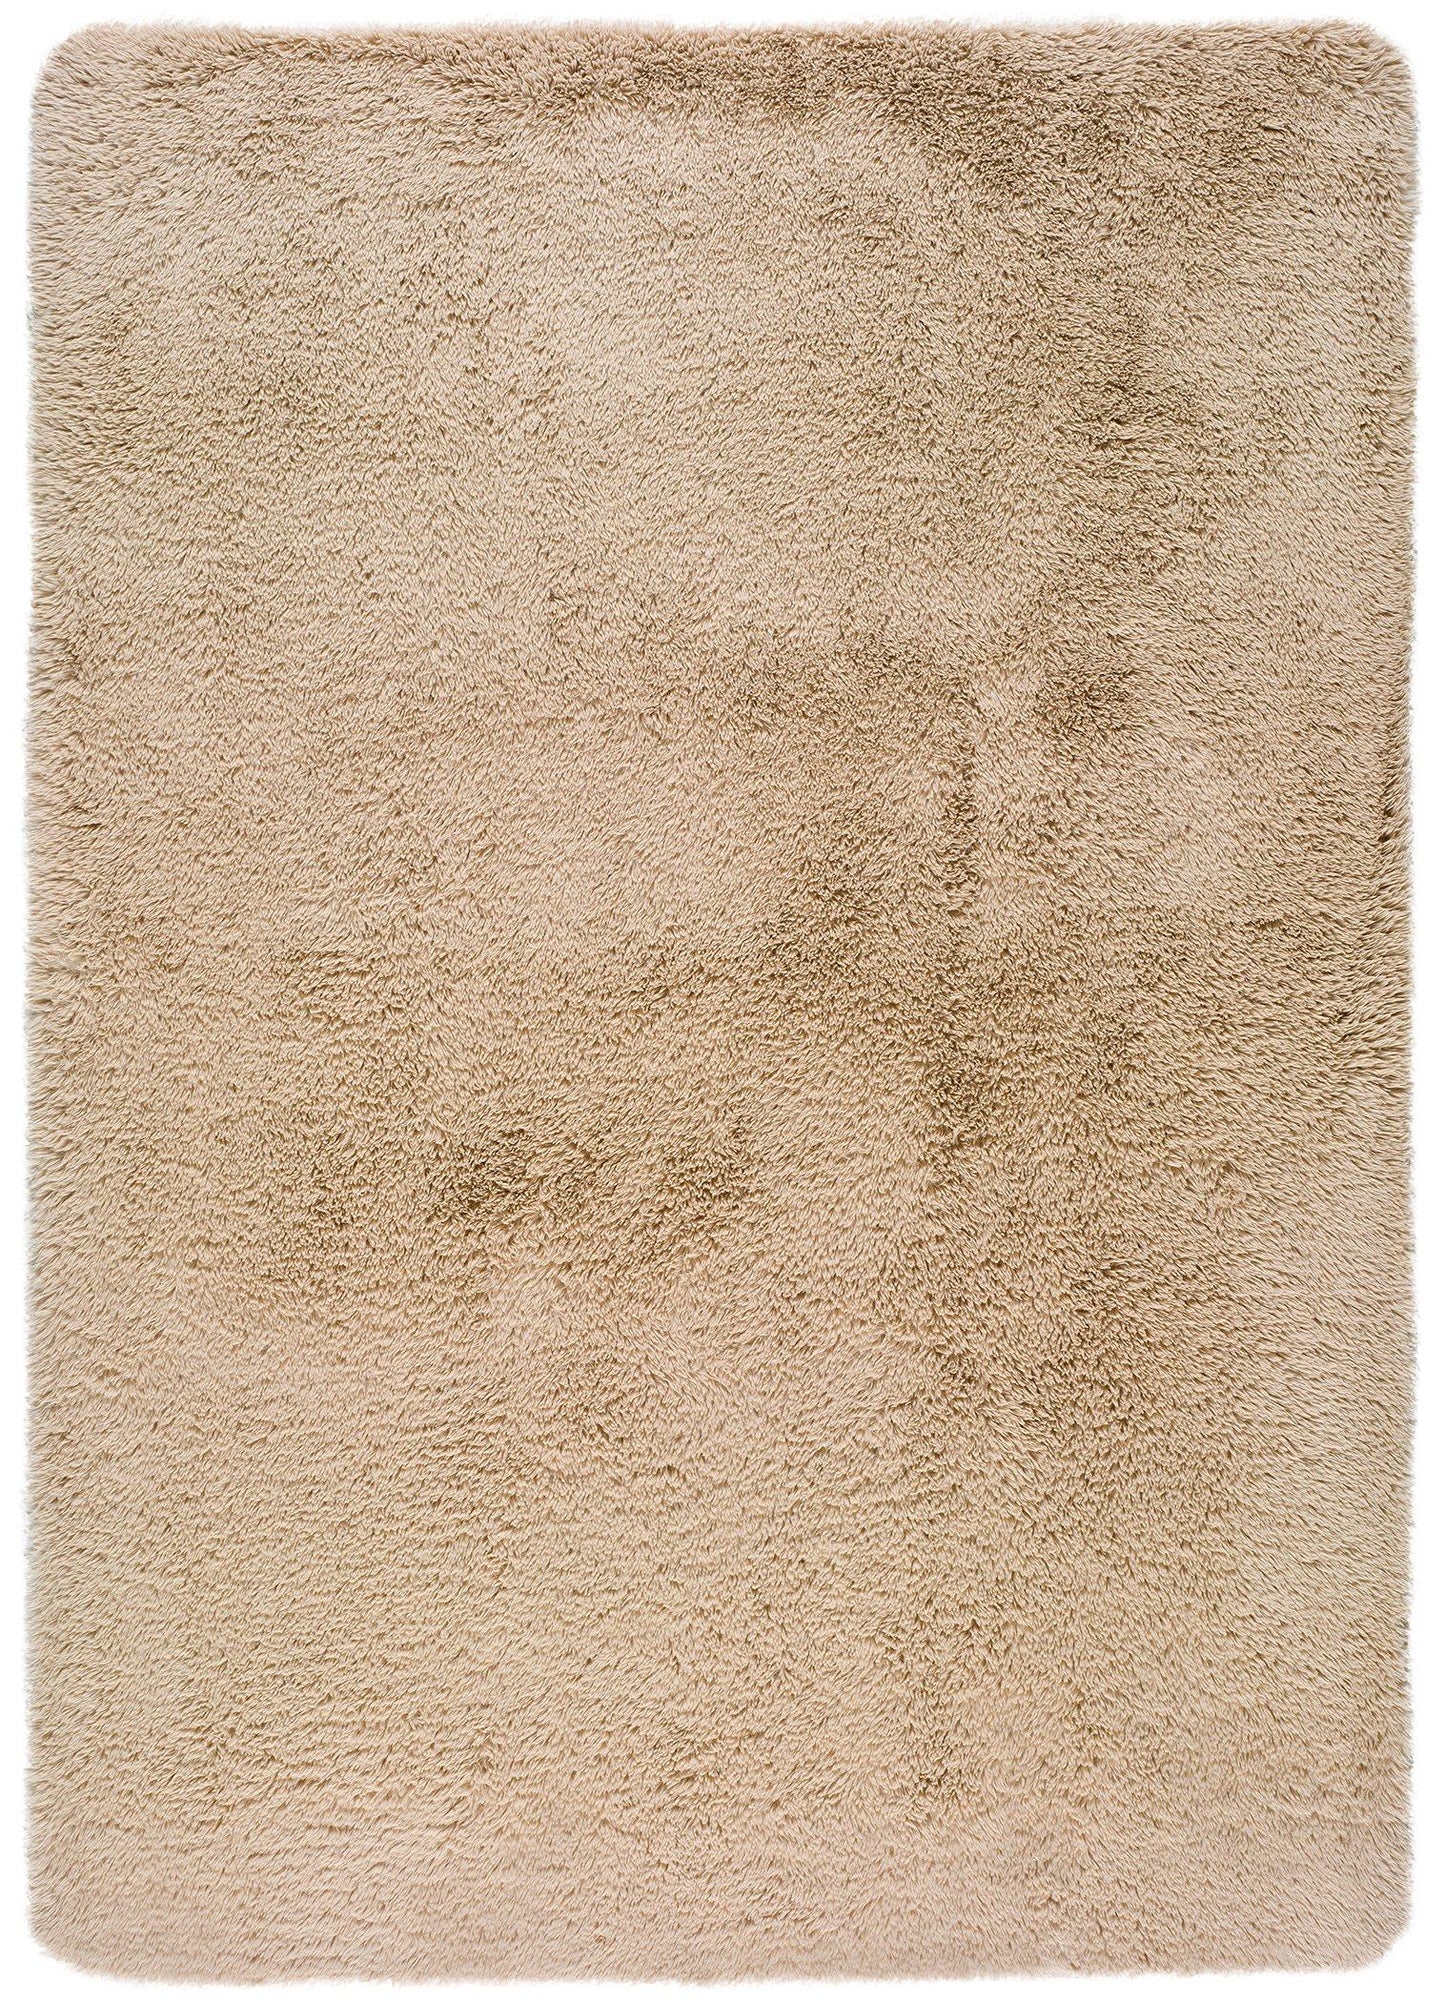  Sofia Rugs - Alfombra de área beige y crema de 3 x 5 pies,  colección Atlantis; alfombra abstracta beige crema para mediados de siglo,  decoración moderna y de granja, alfombras beige